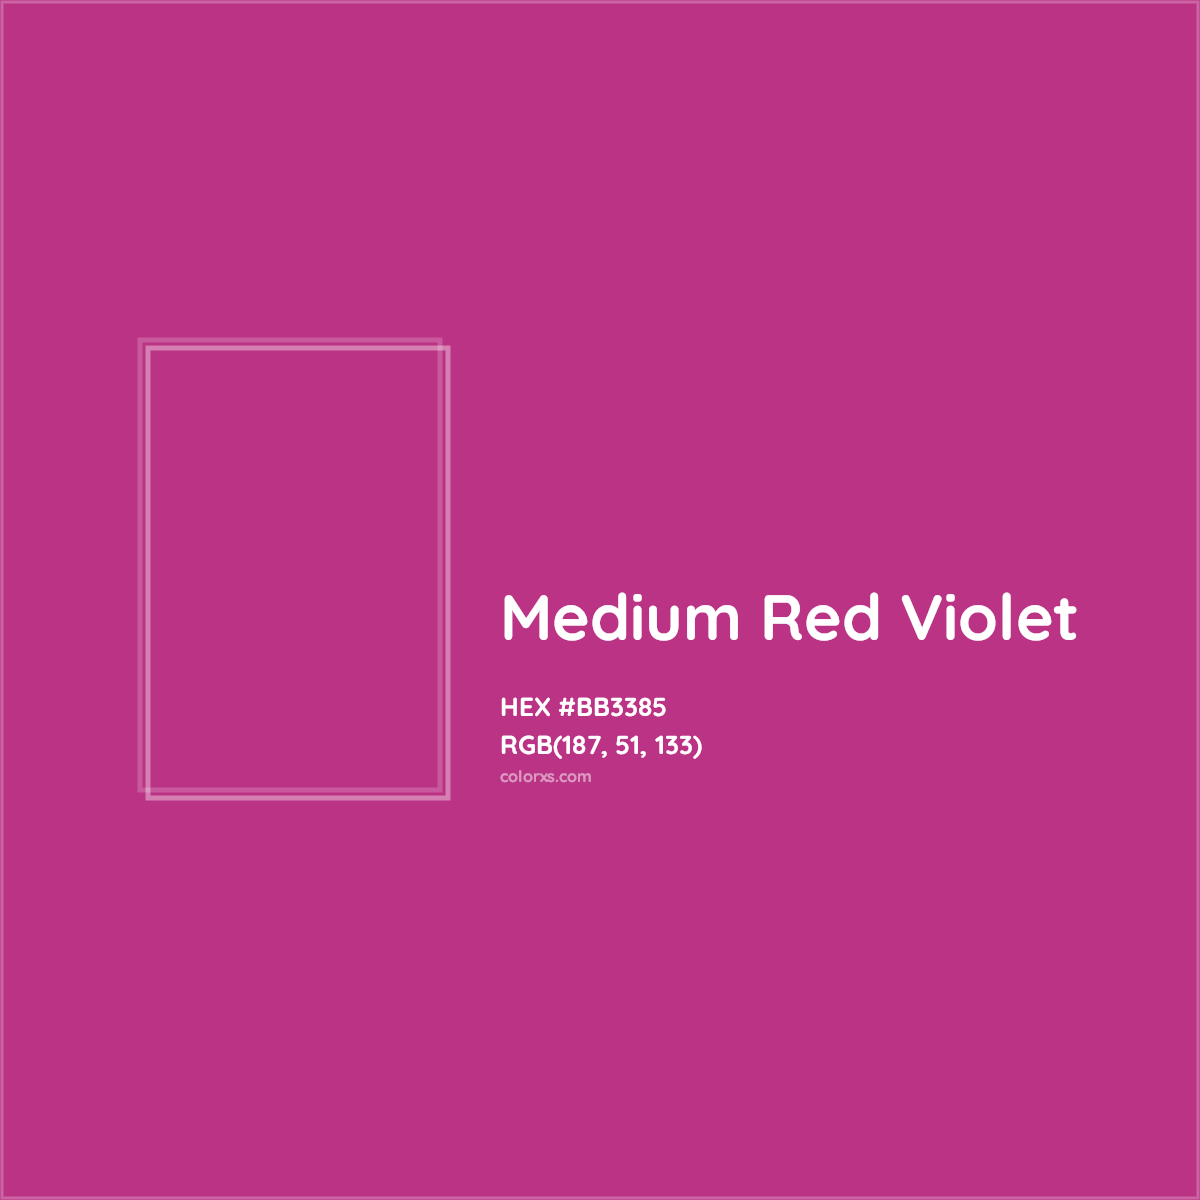 HEX #BB3385 Medium Red Violet Color Crayola Crayons - Color Code